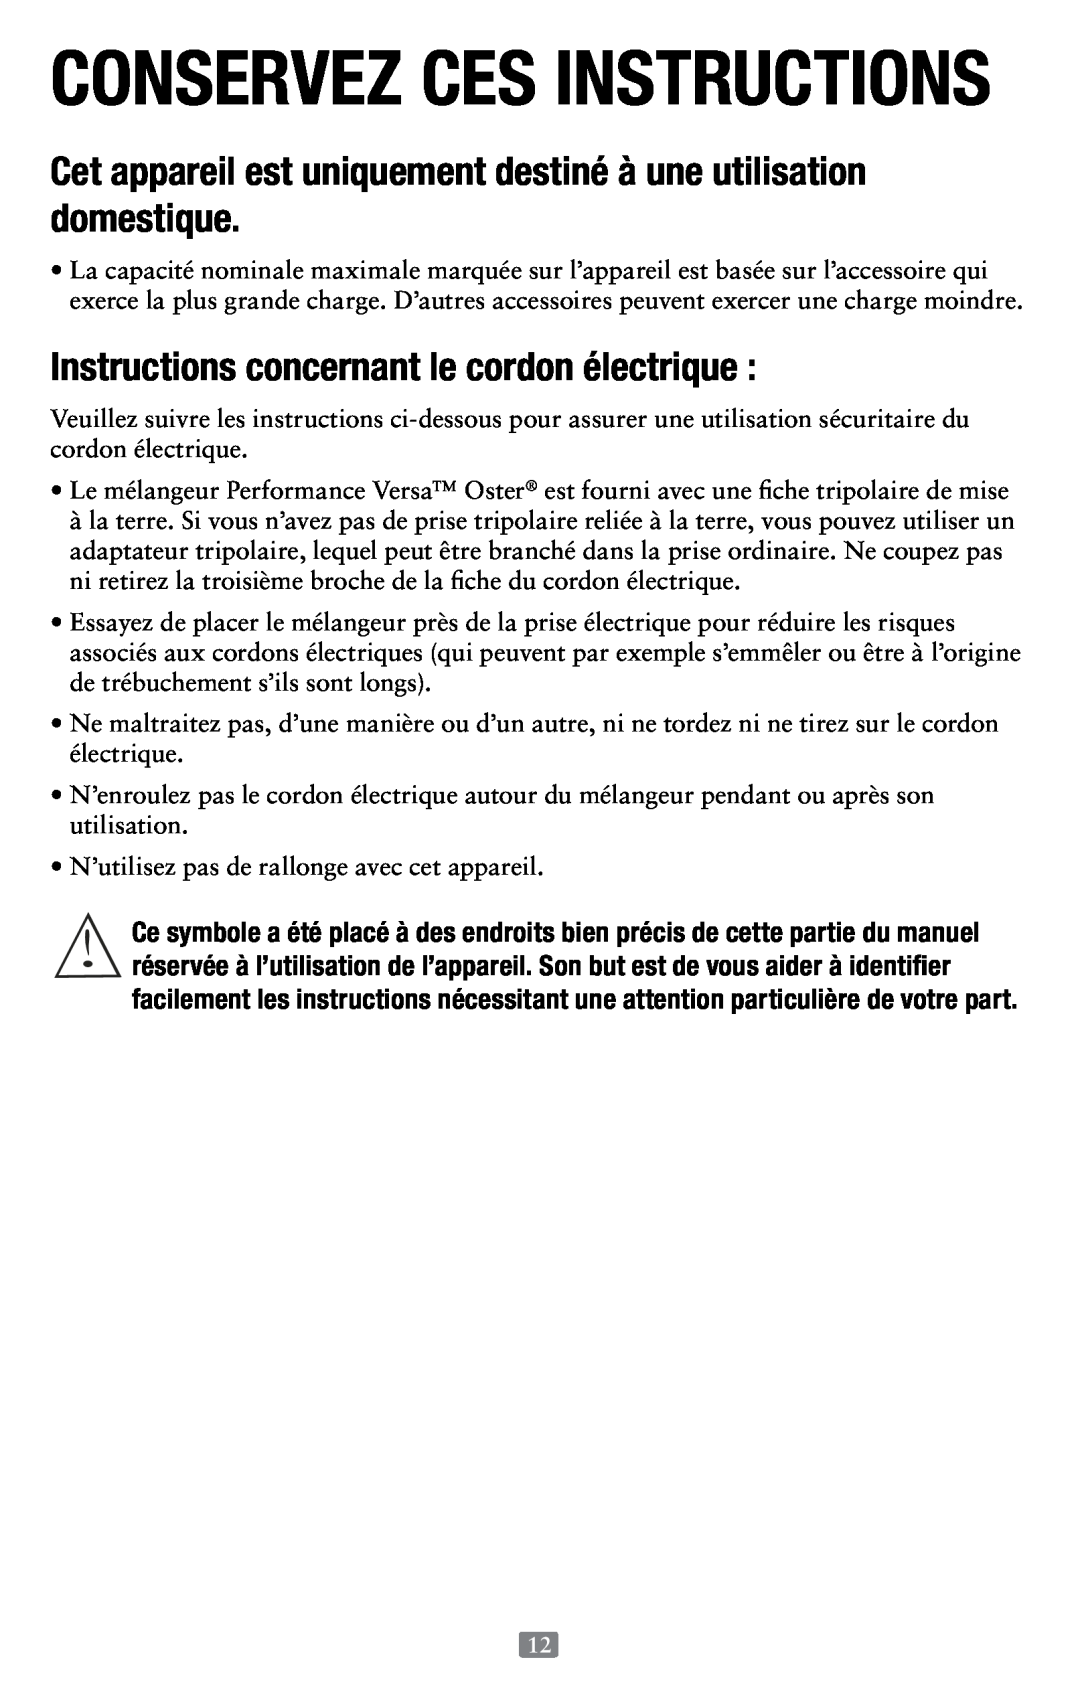 Oster 155876, Versa Performance Blender user manual Conservez Ces Instructions, Instructions concernant le cordon électrique 